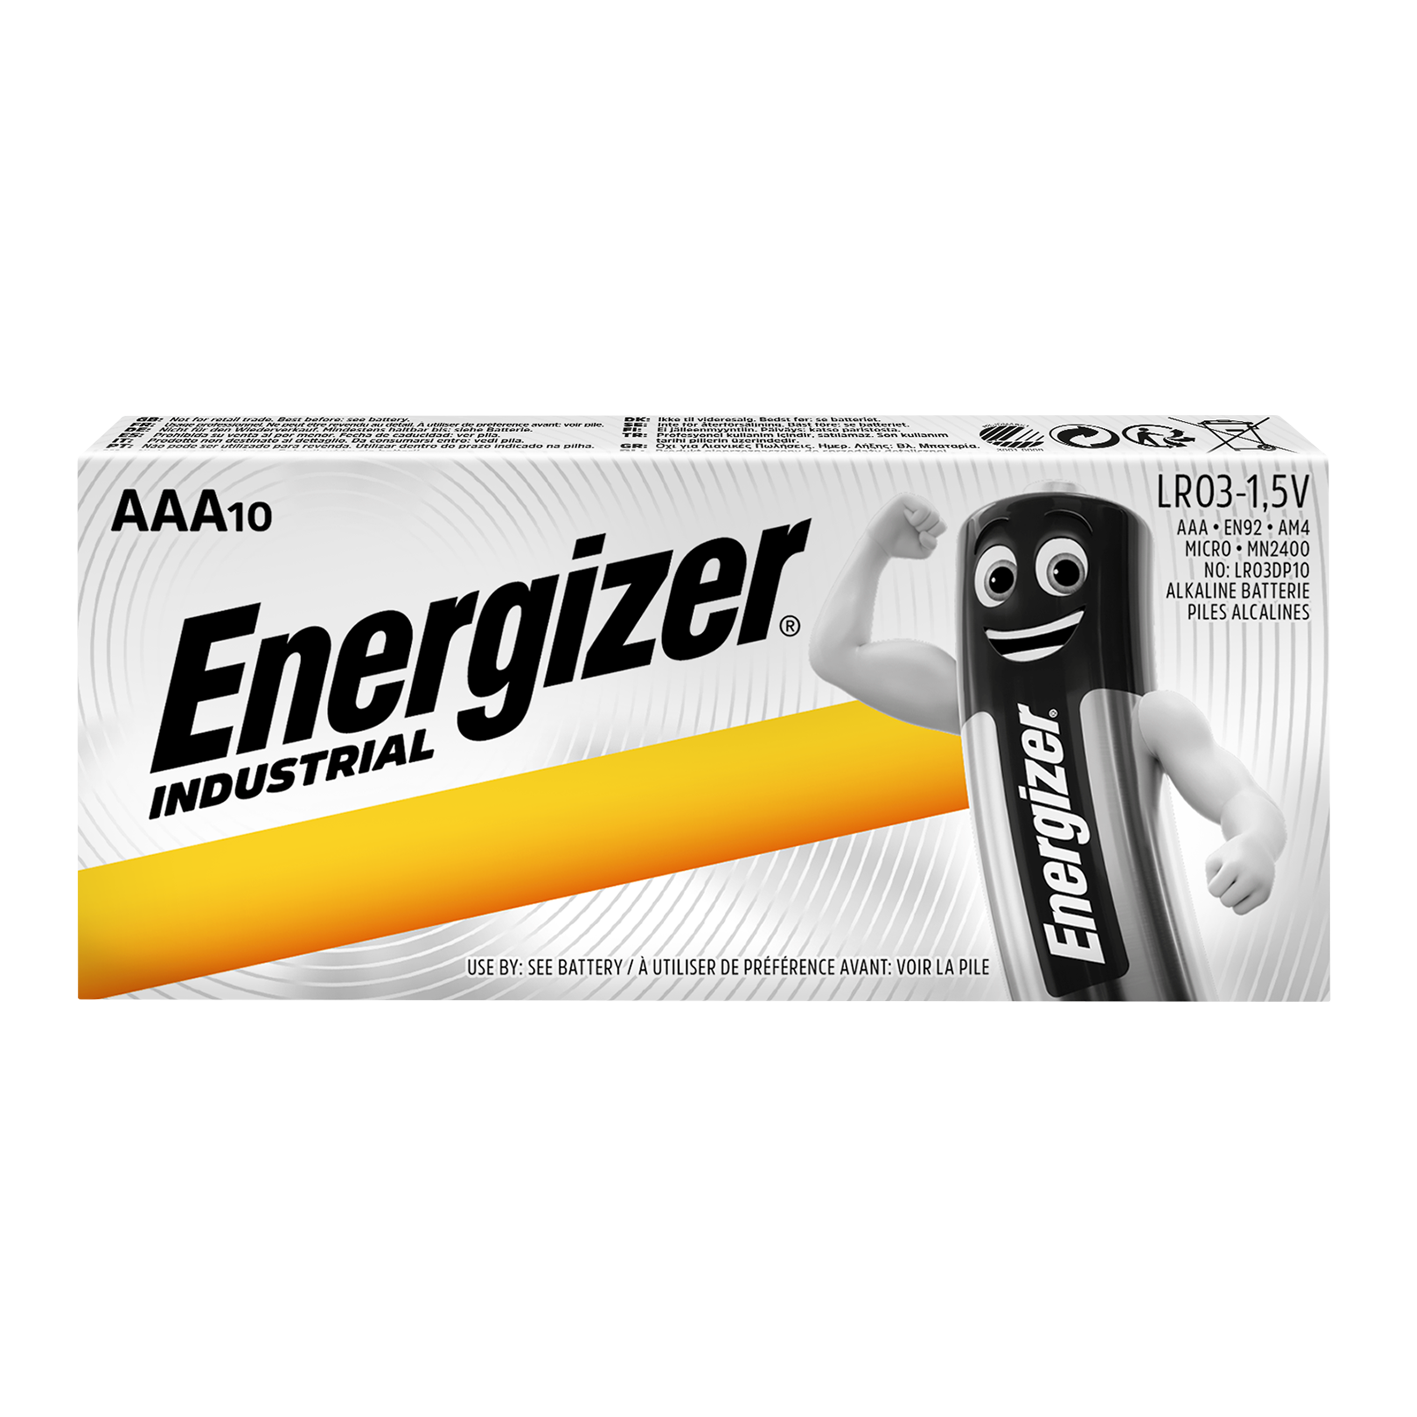 Energizer AAA Industrial, paquete de 10